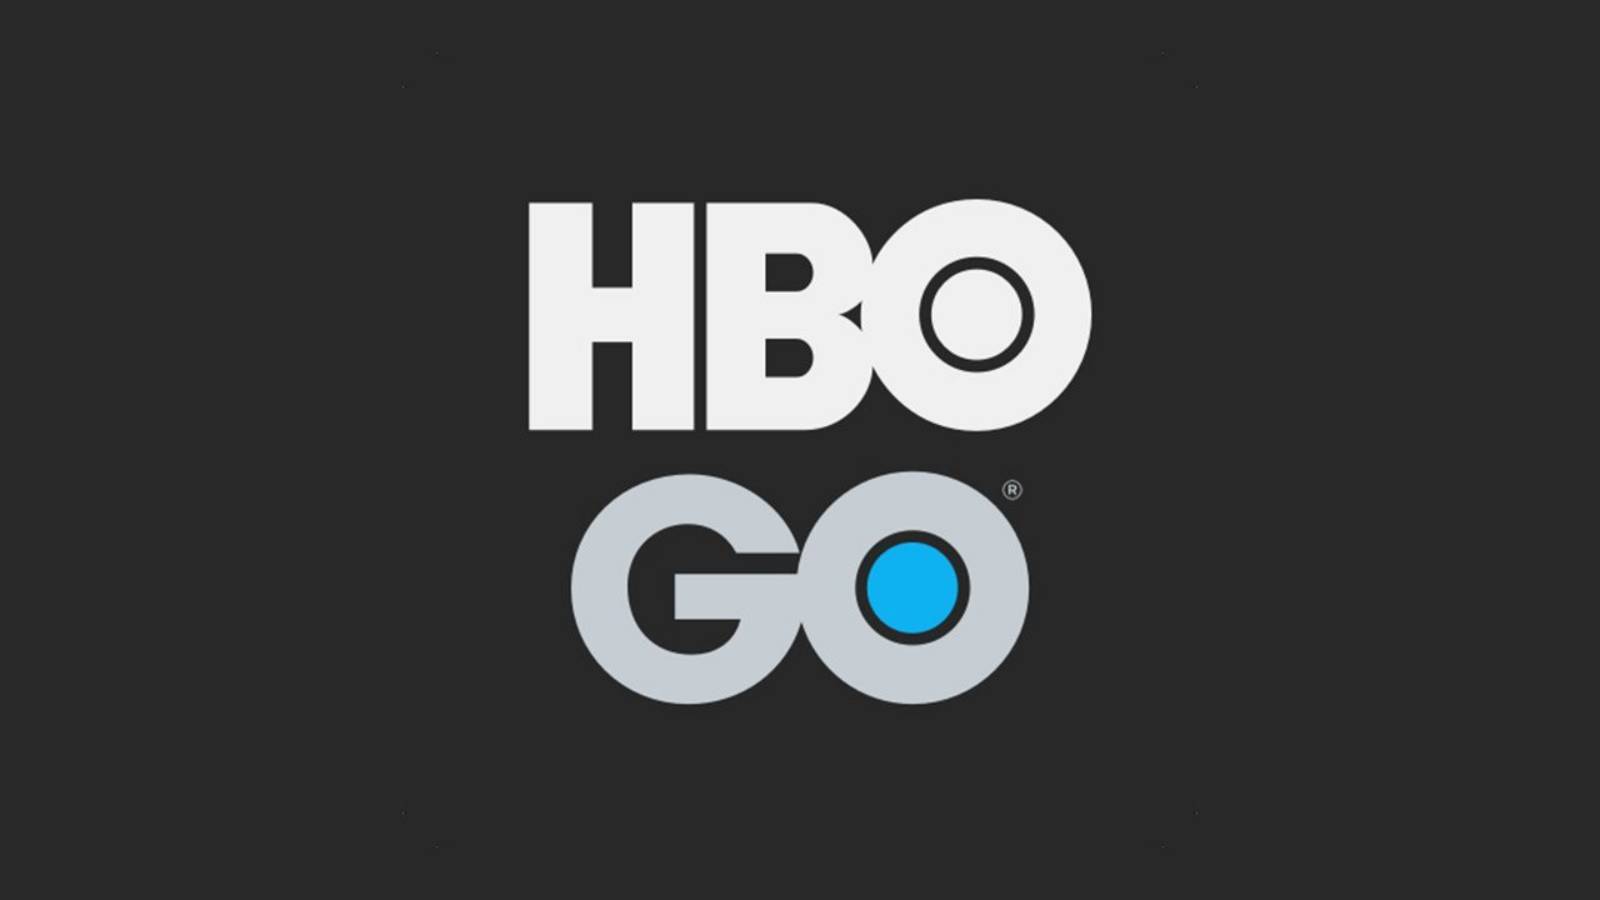 HBO Go mai